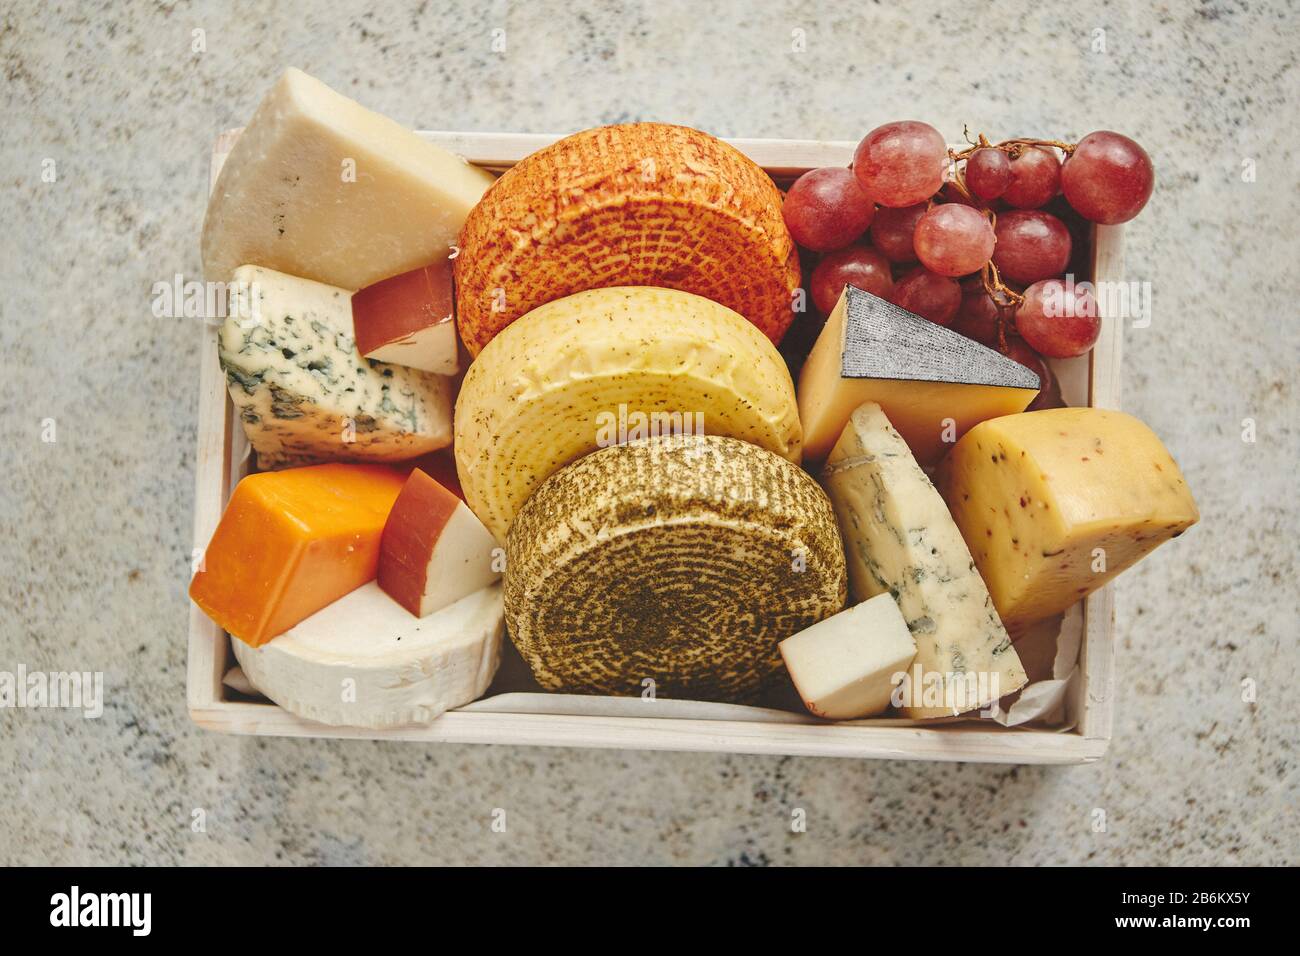 Fresca y deliciosa, diferentes tipos de quesos que colocan en cajas de madera con uvas Foto de stock